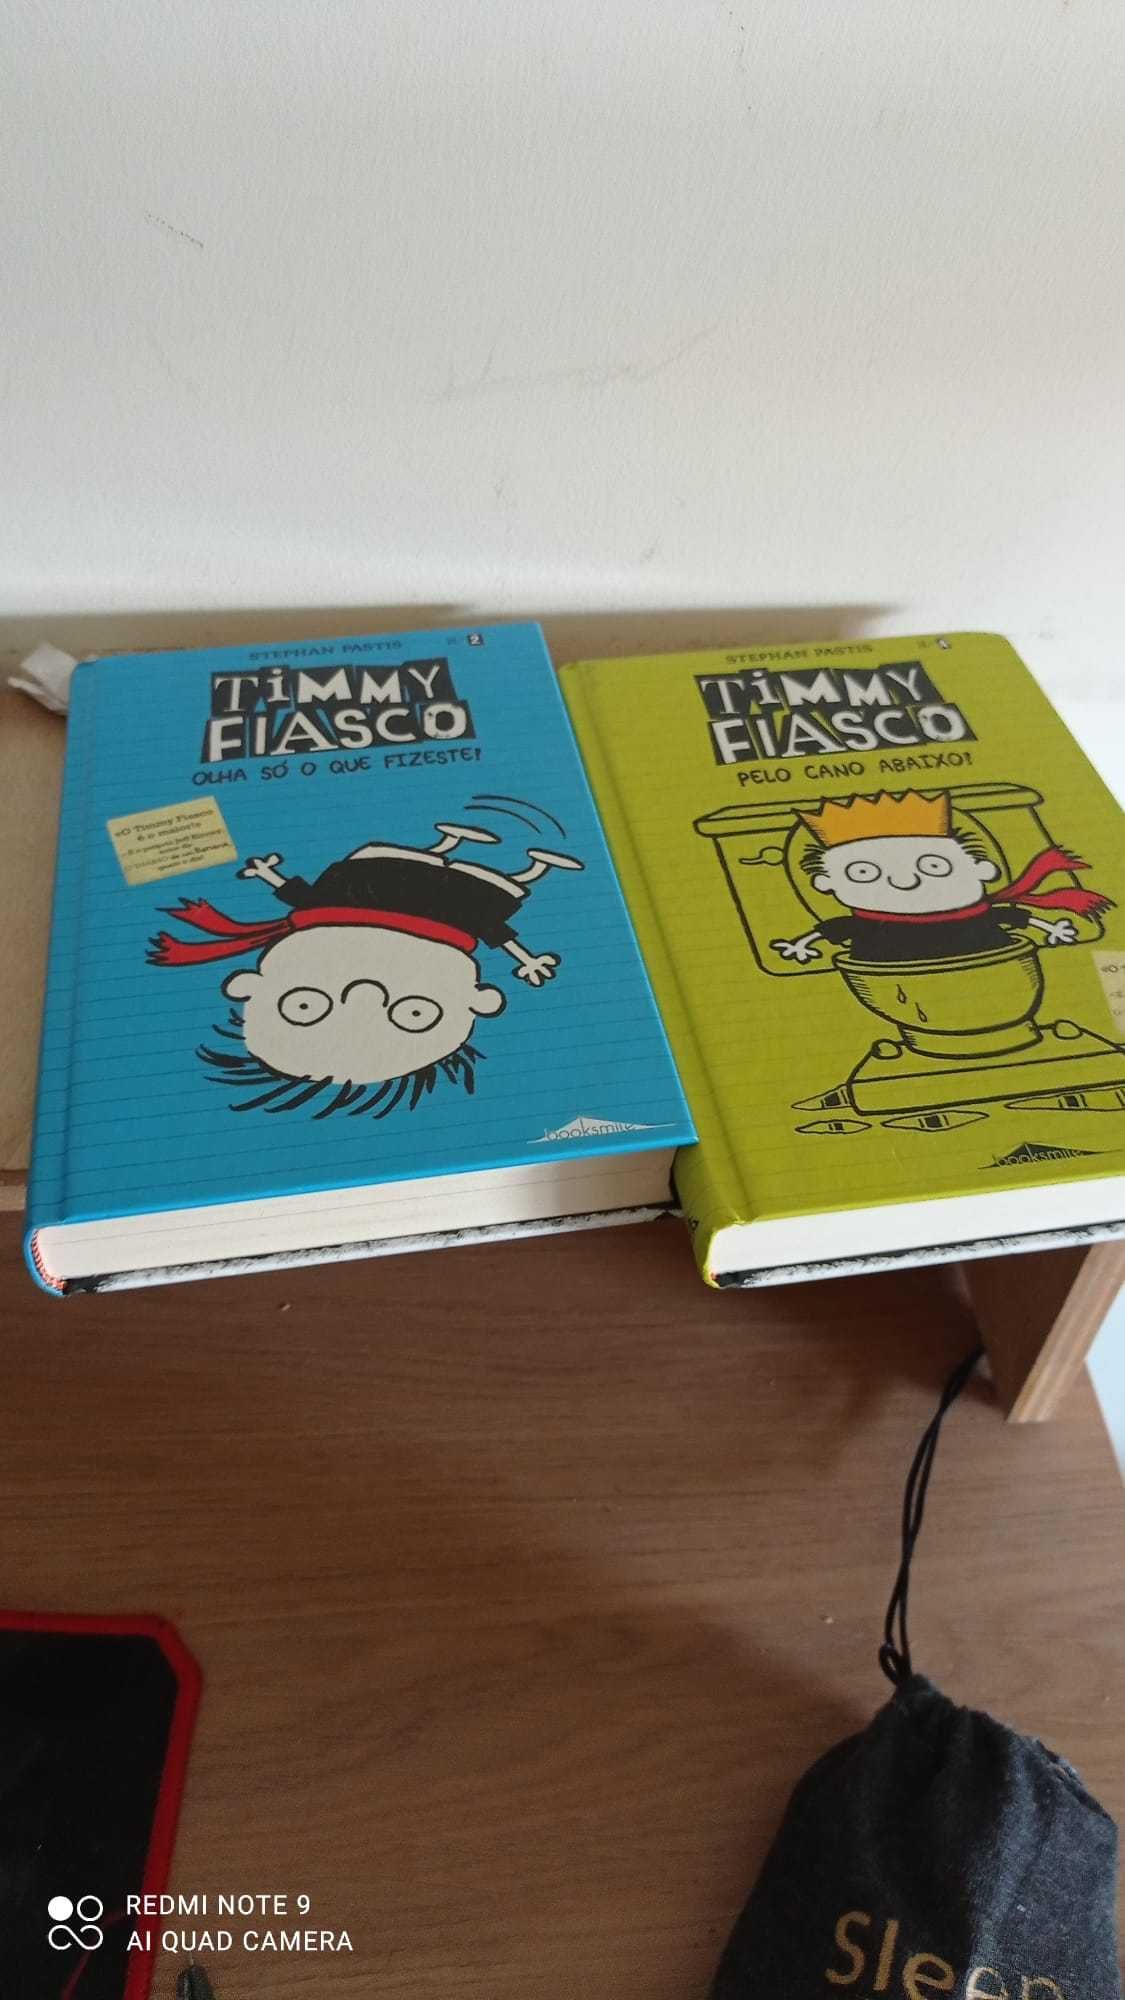 Livros "Timmy Fiasco"